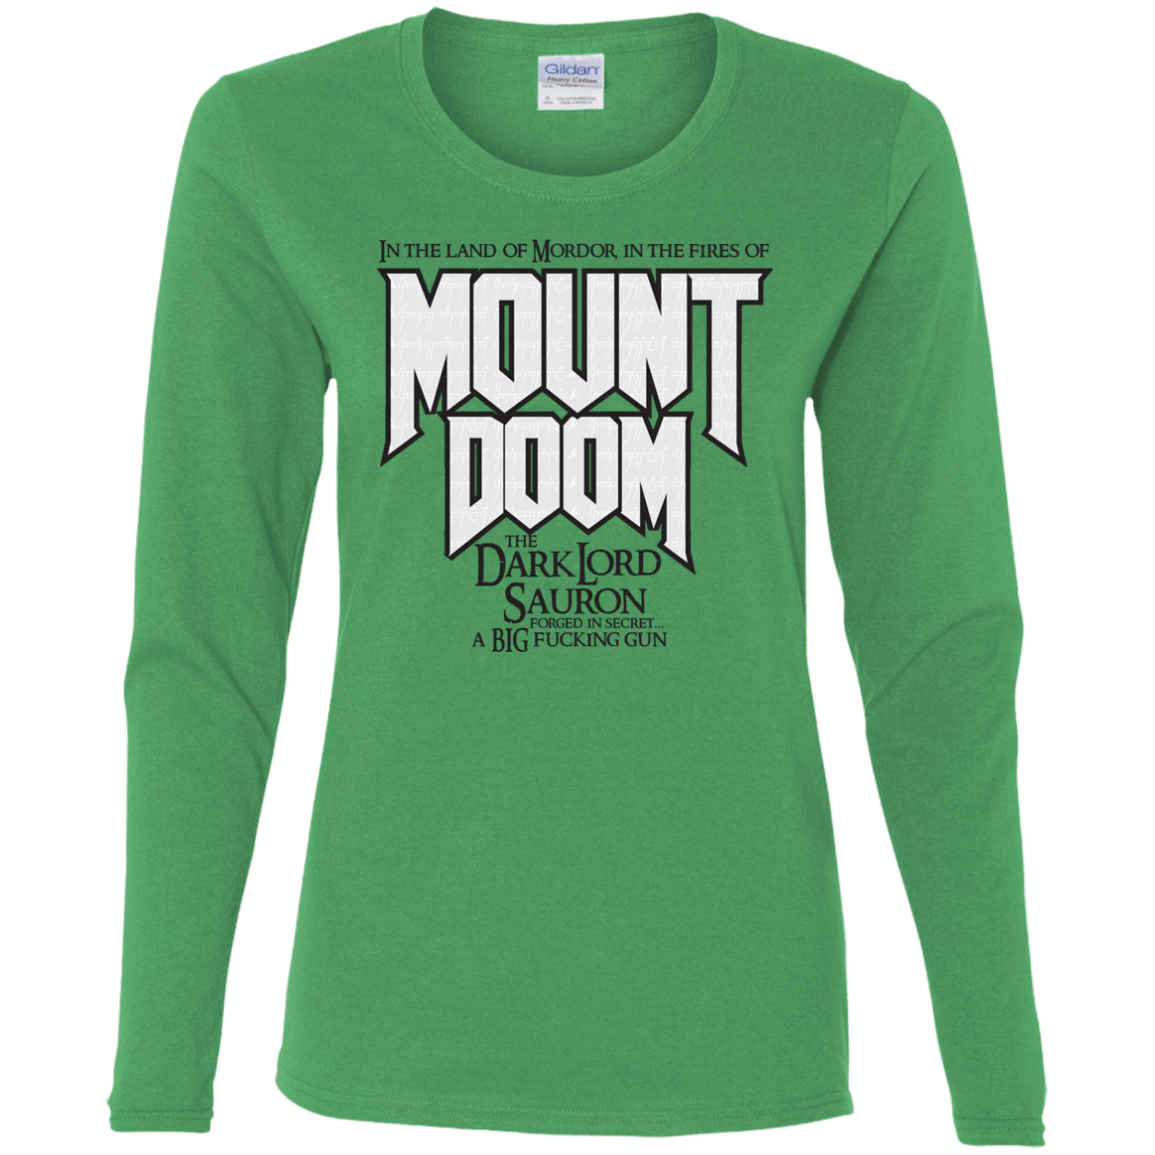 T-Shirts Irish Green / S Mount DOOM Women's Long Sleeve T-Shirt